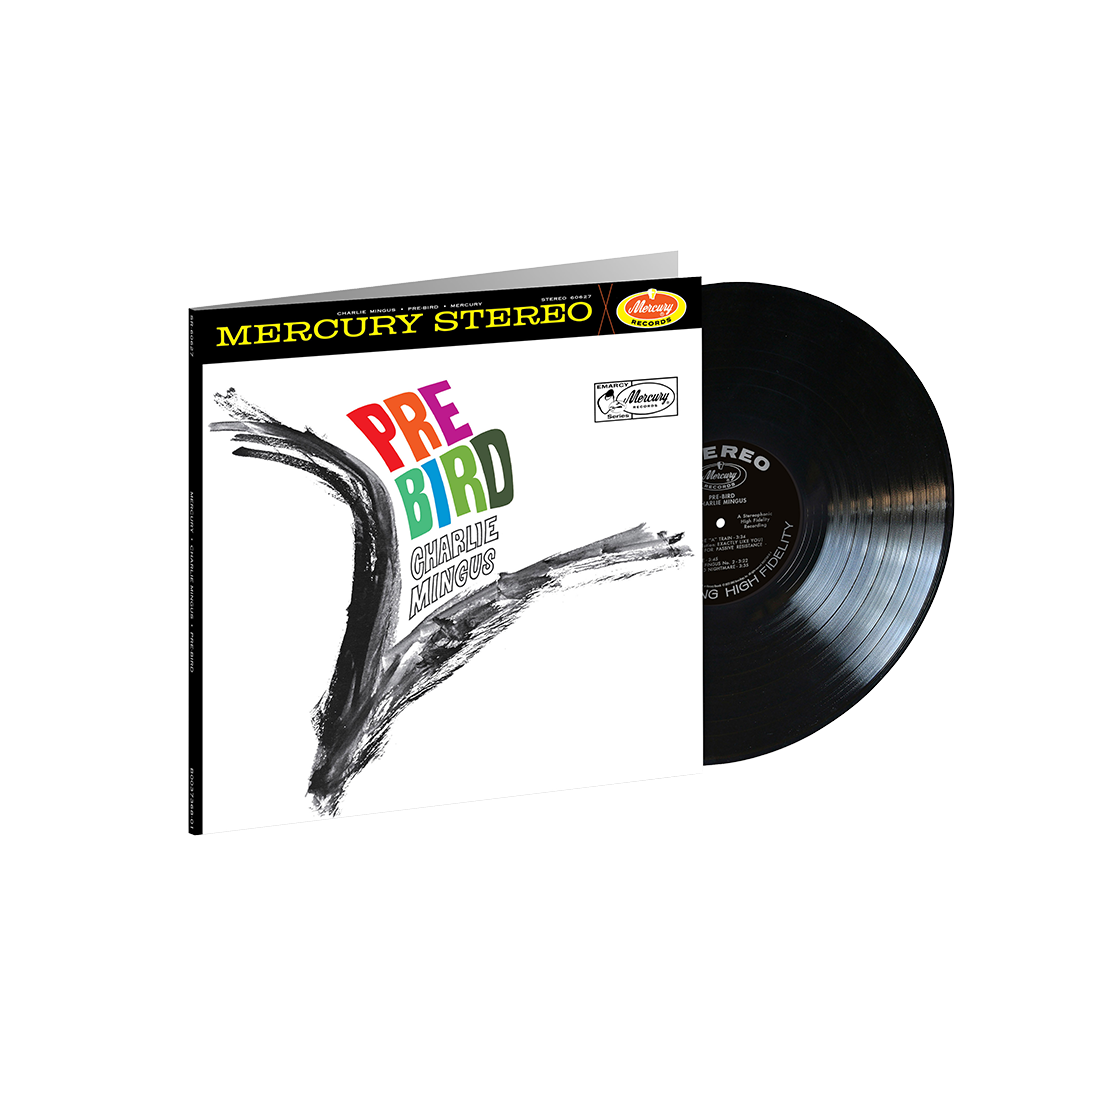 Charles Mingus - Pre-Bird (Acoustic Sounds): Vinyl LP